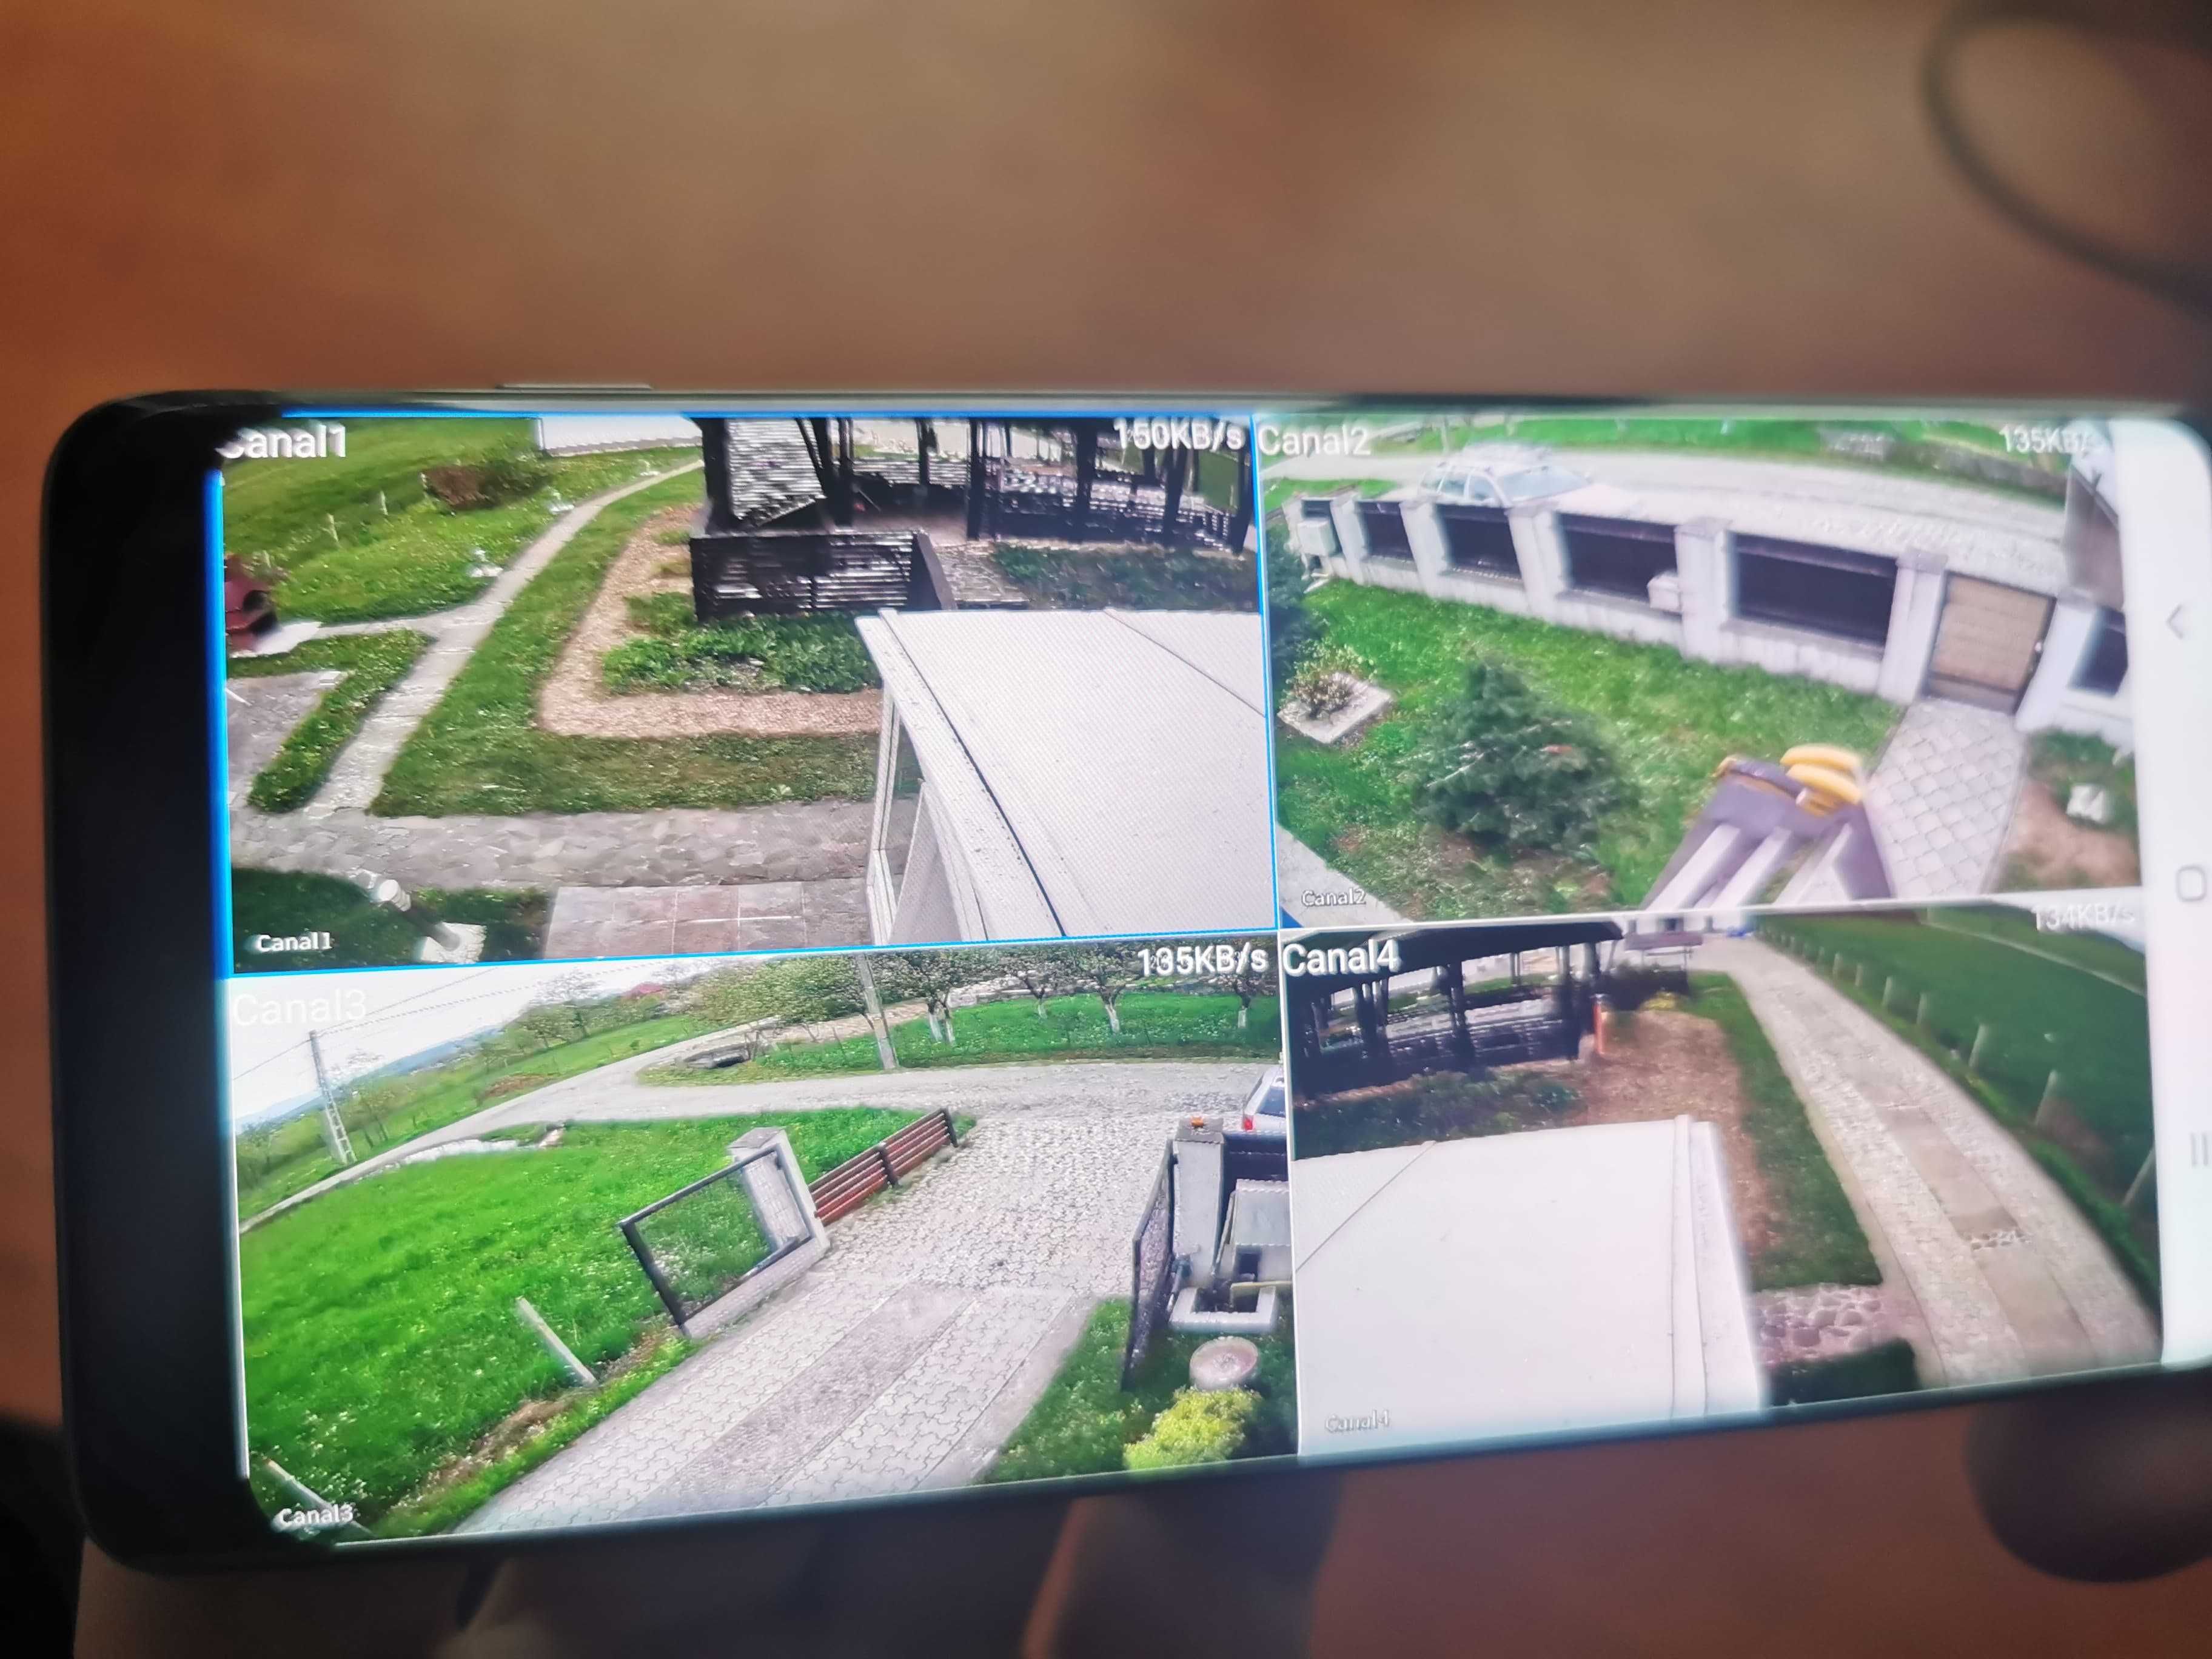 Sistem 4 8 camere supraveghere video Hikvision cu montaj in Alba Iulia